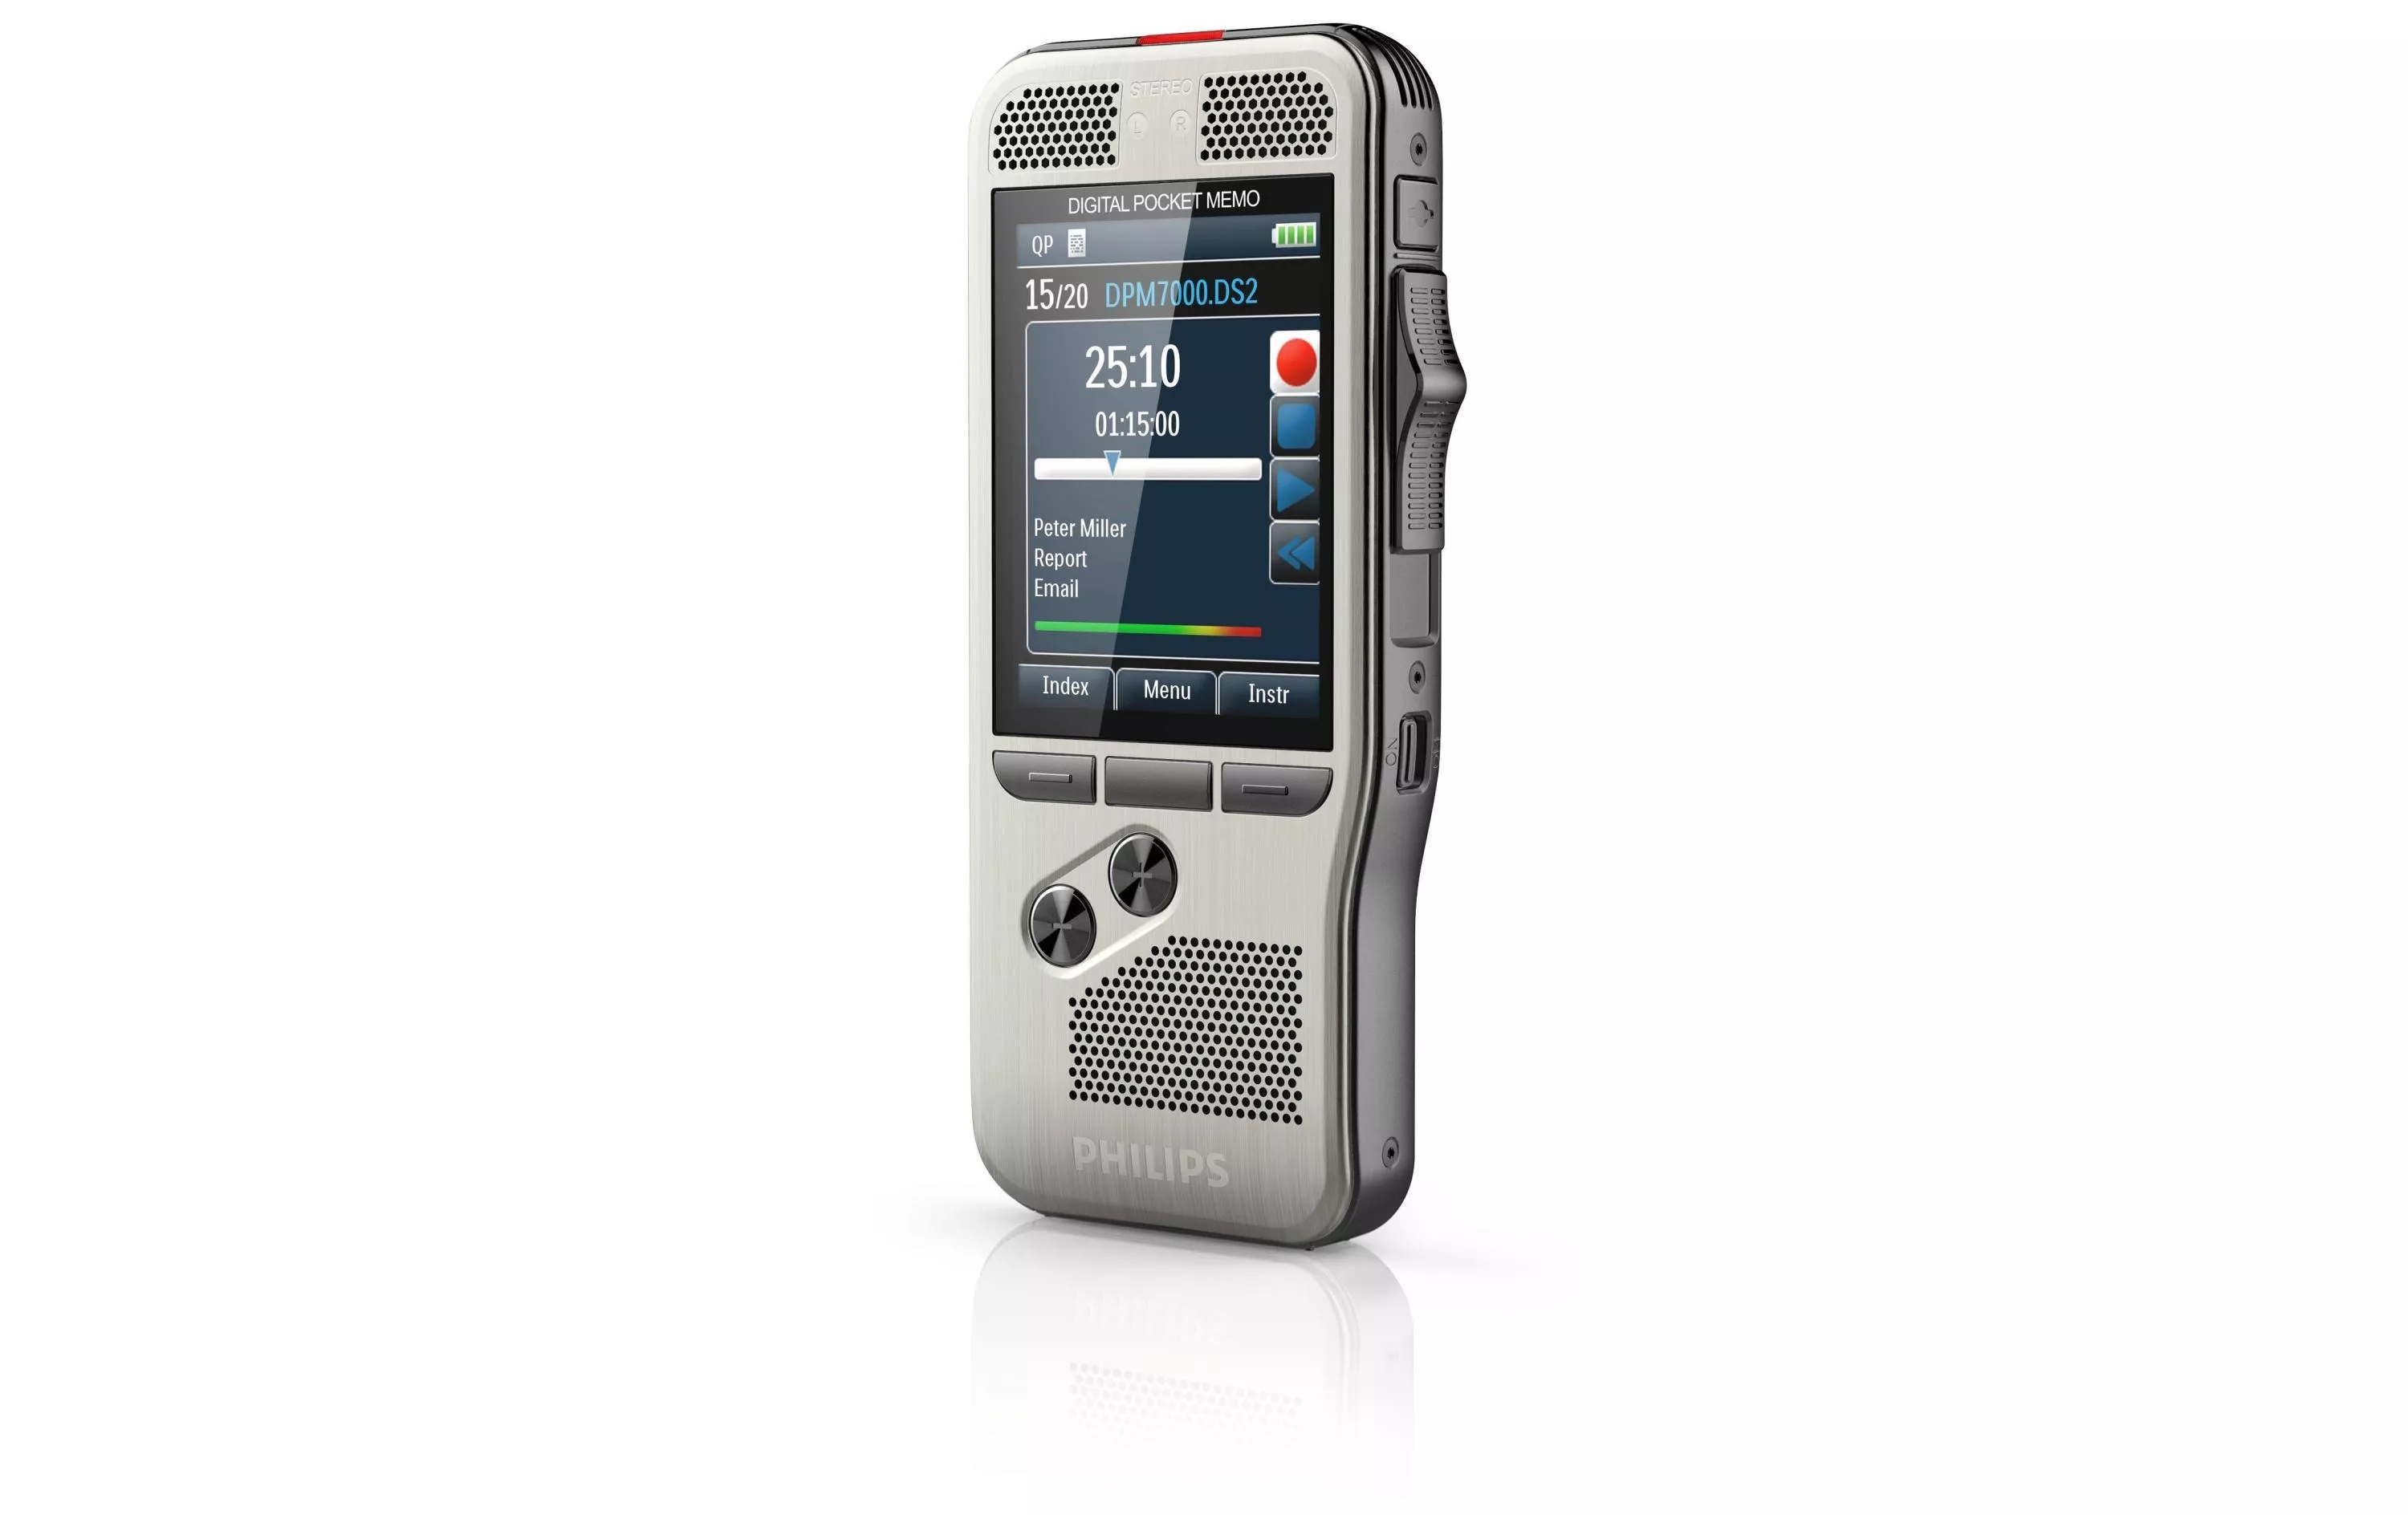 Diktiergerät Digital Pocket Memo DPM7000